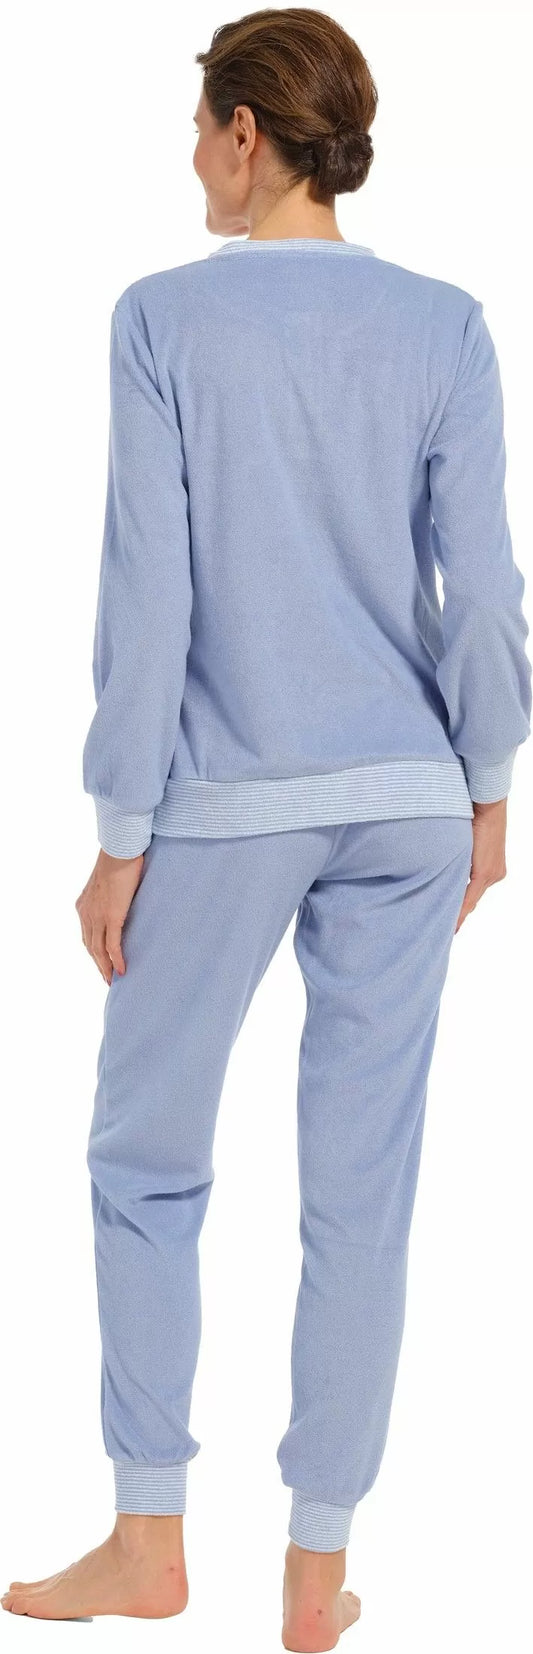 Pastunette Badstof Pyjama stretch met boorden - 20232-174-4 - blauw